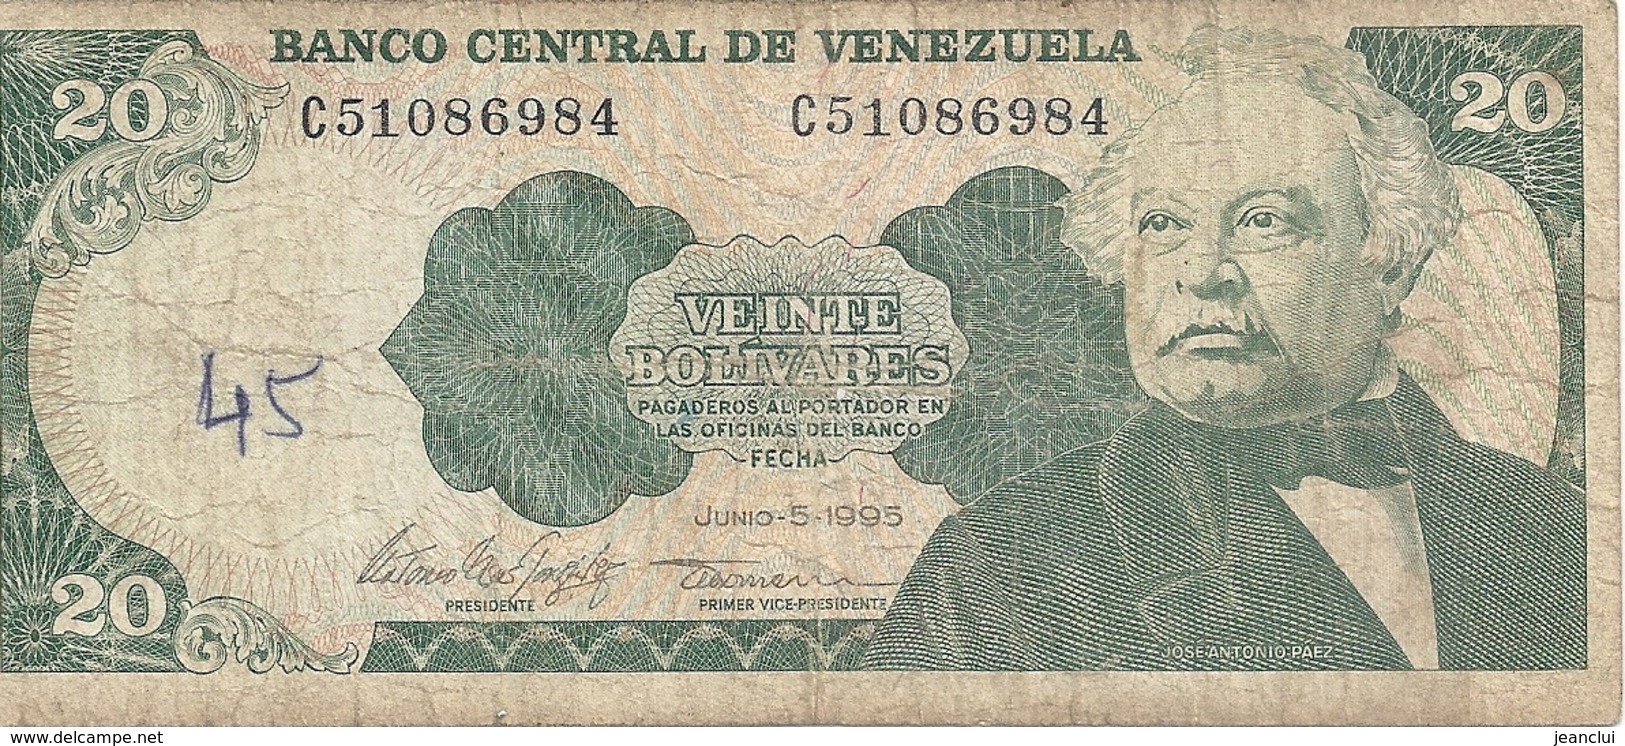 BANCO CENTRAL DE VENEZUELA - 20 BOLIVARES . JUNIO - 5- 1995  . N° C 51086984   . 2 SCANES - Venezuela